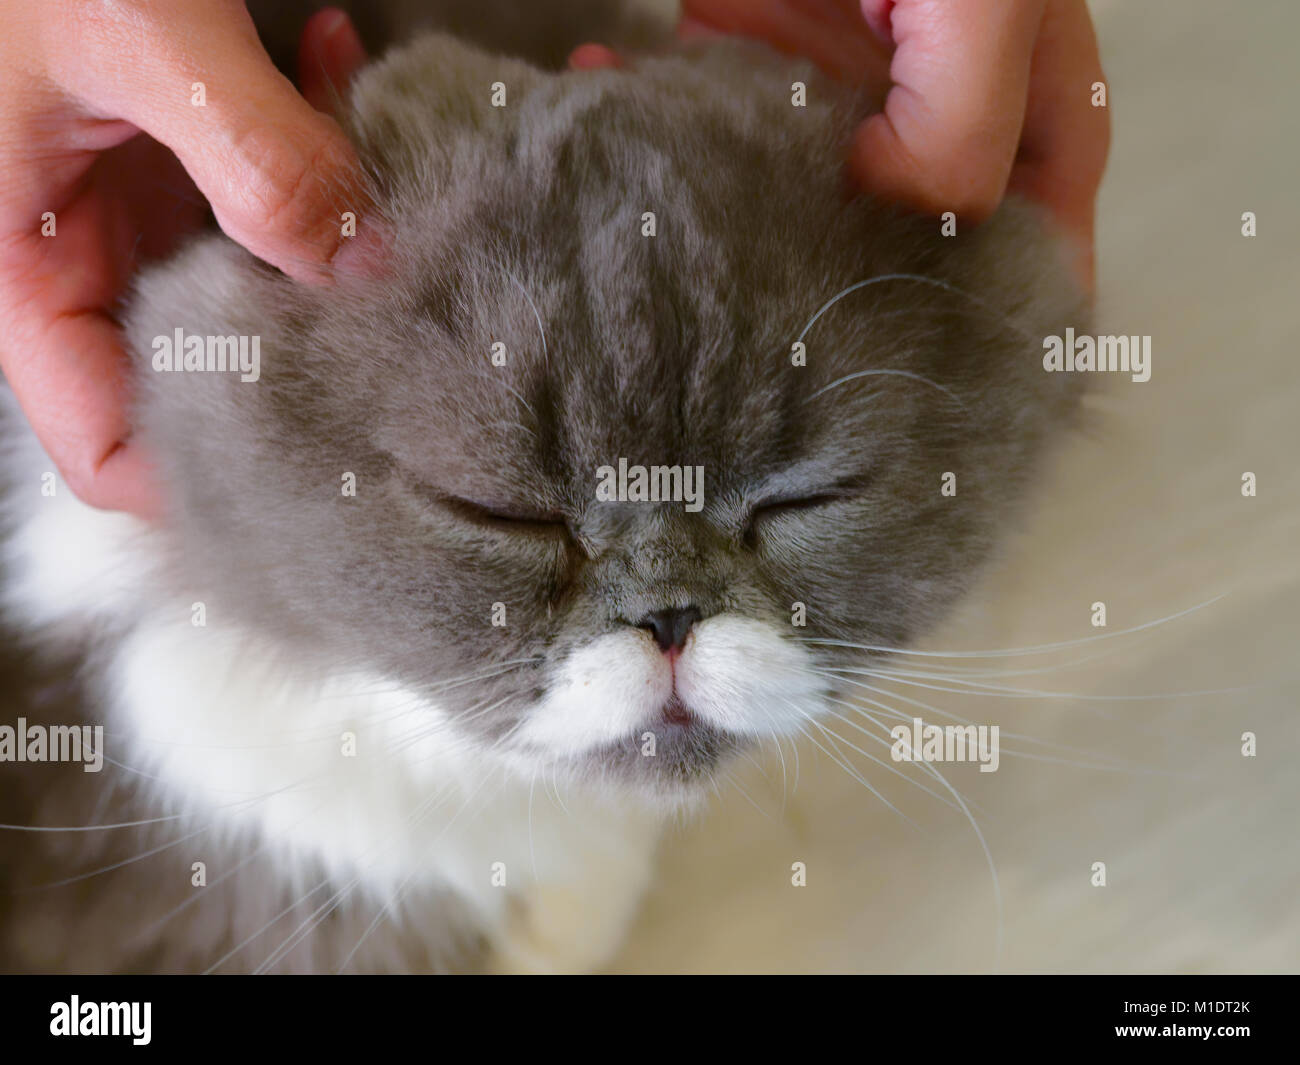 Donna mani pet e massaggio sulla testa del grigio e bianco gatto adorabile con gli occhi chiusi su sfondo di legno Foto Stock